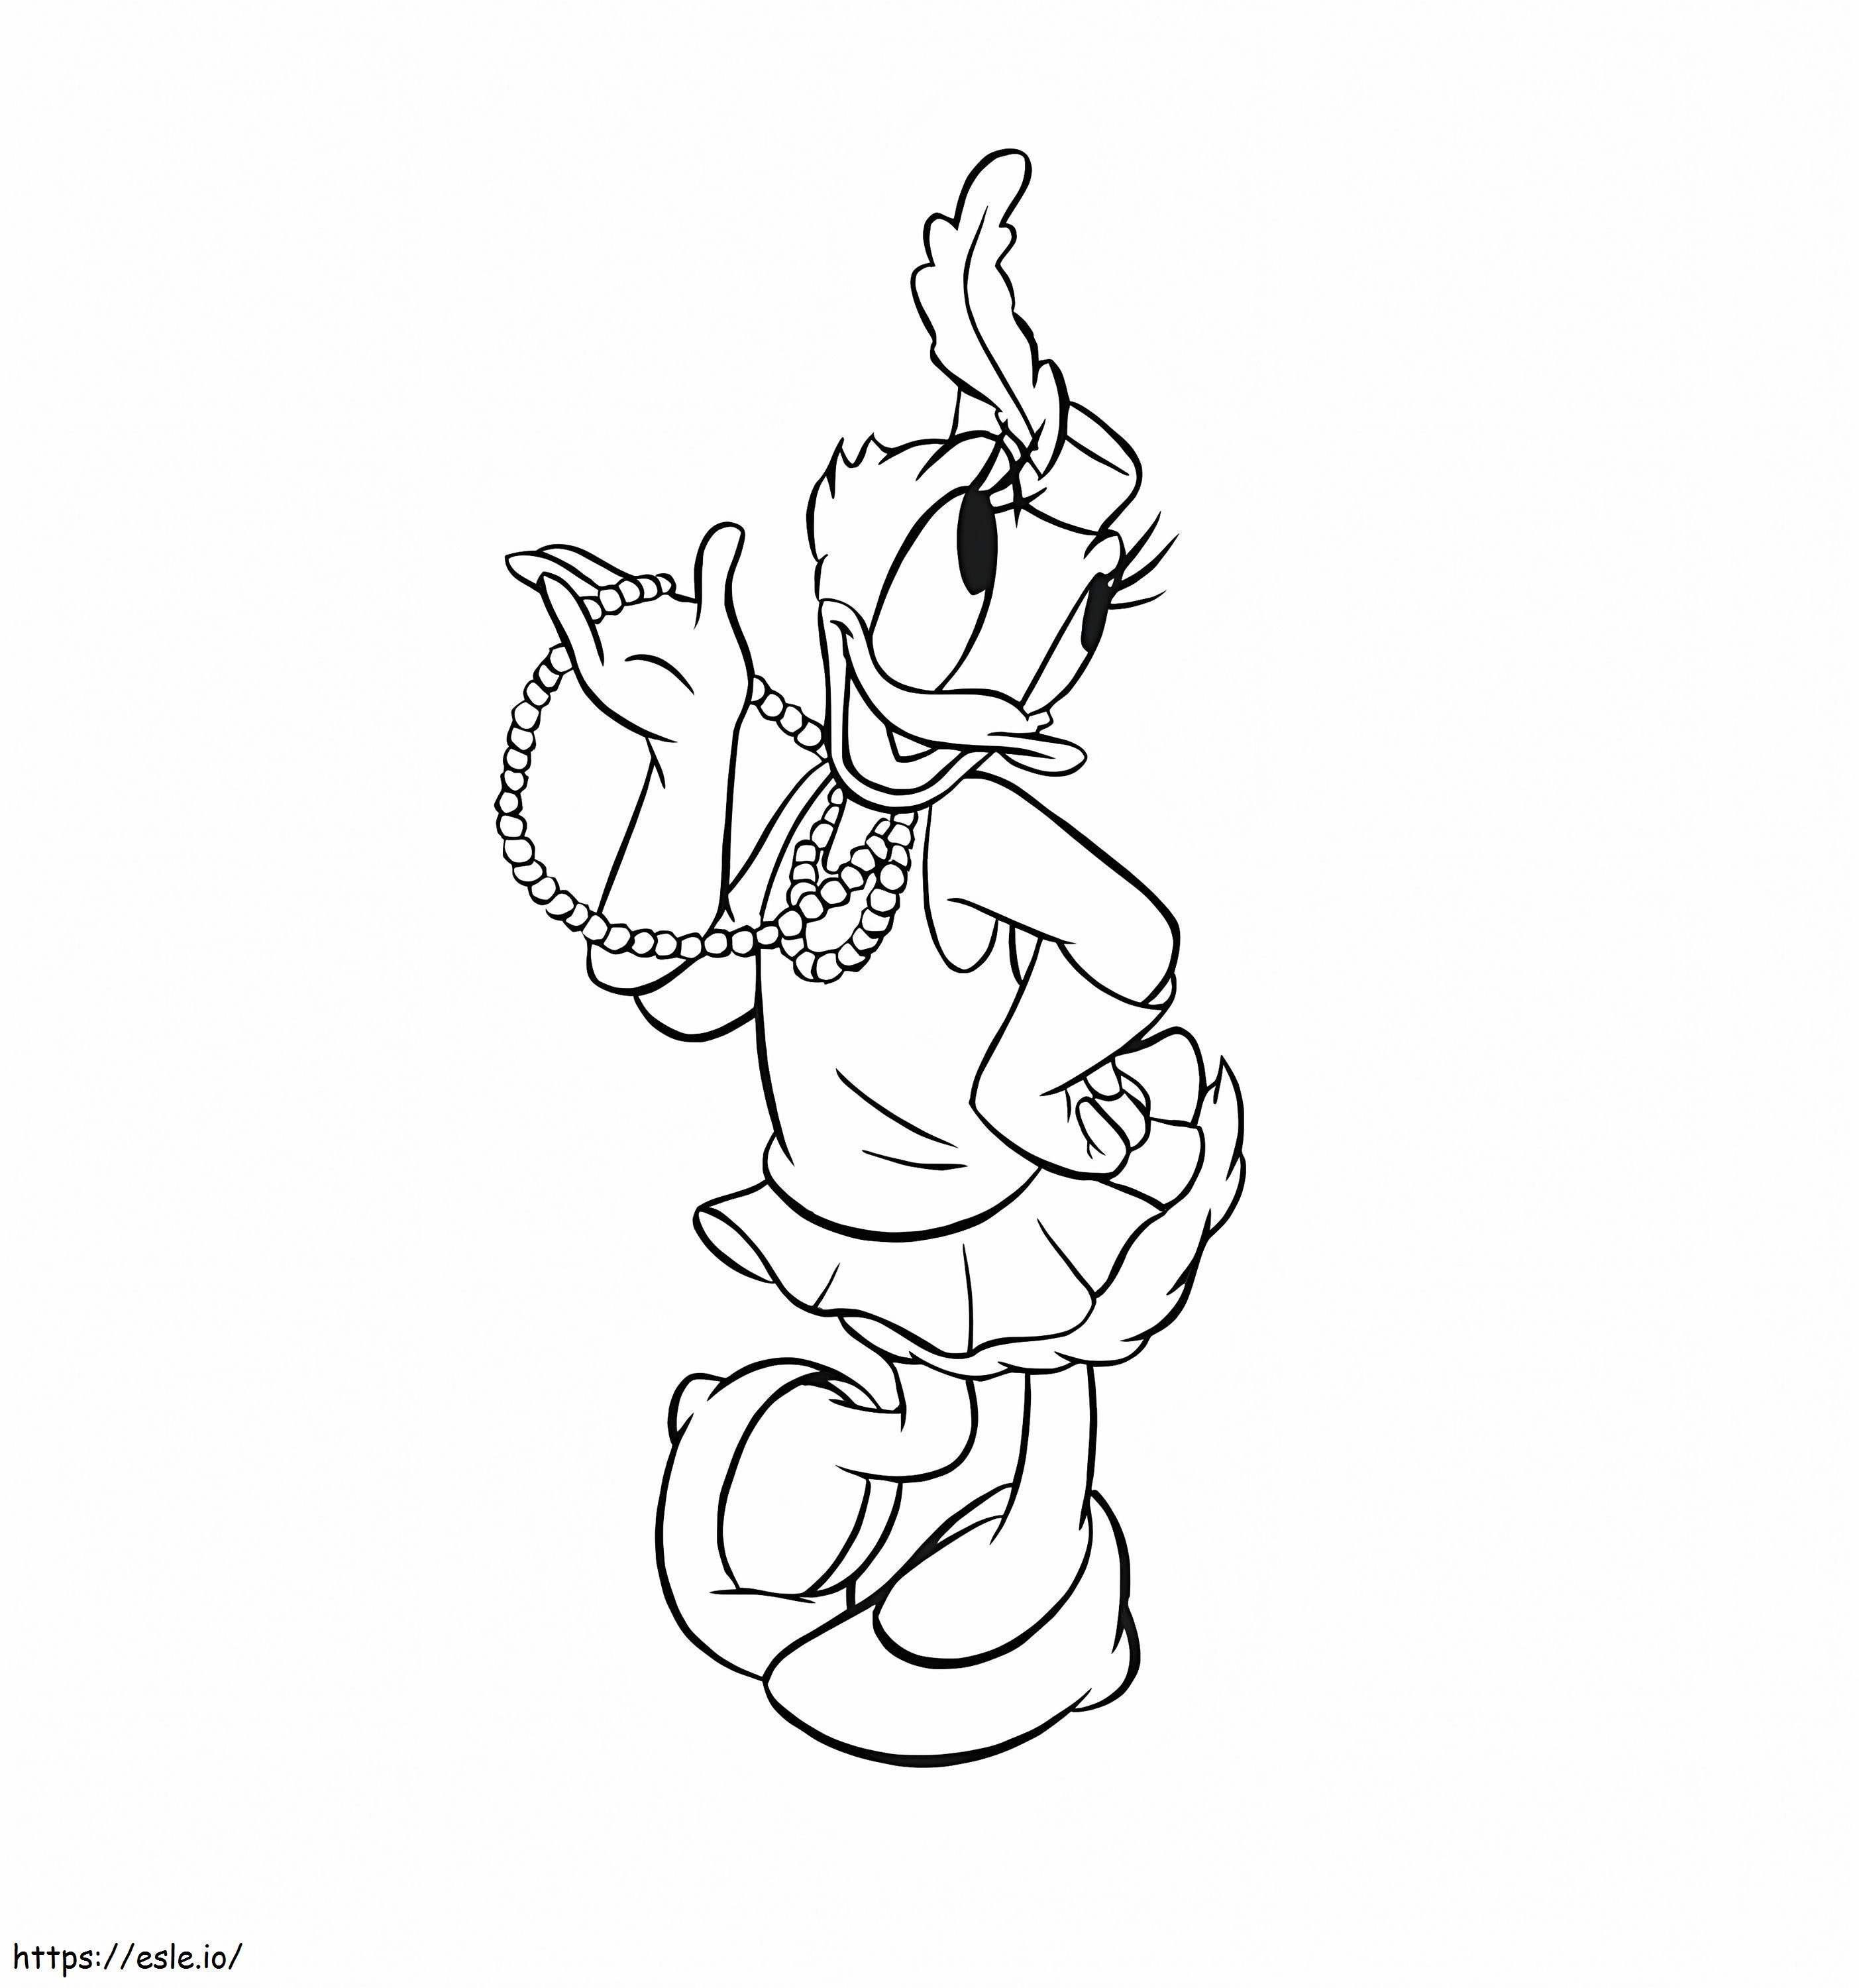 Daisy Duck ținând în mână un colier de perle de colorat